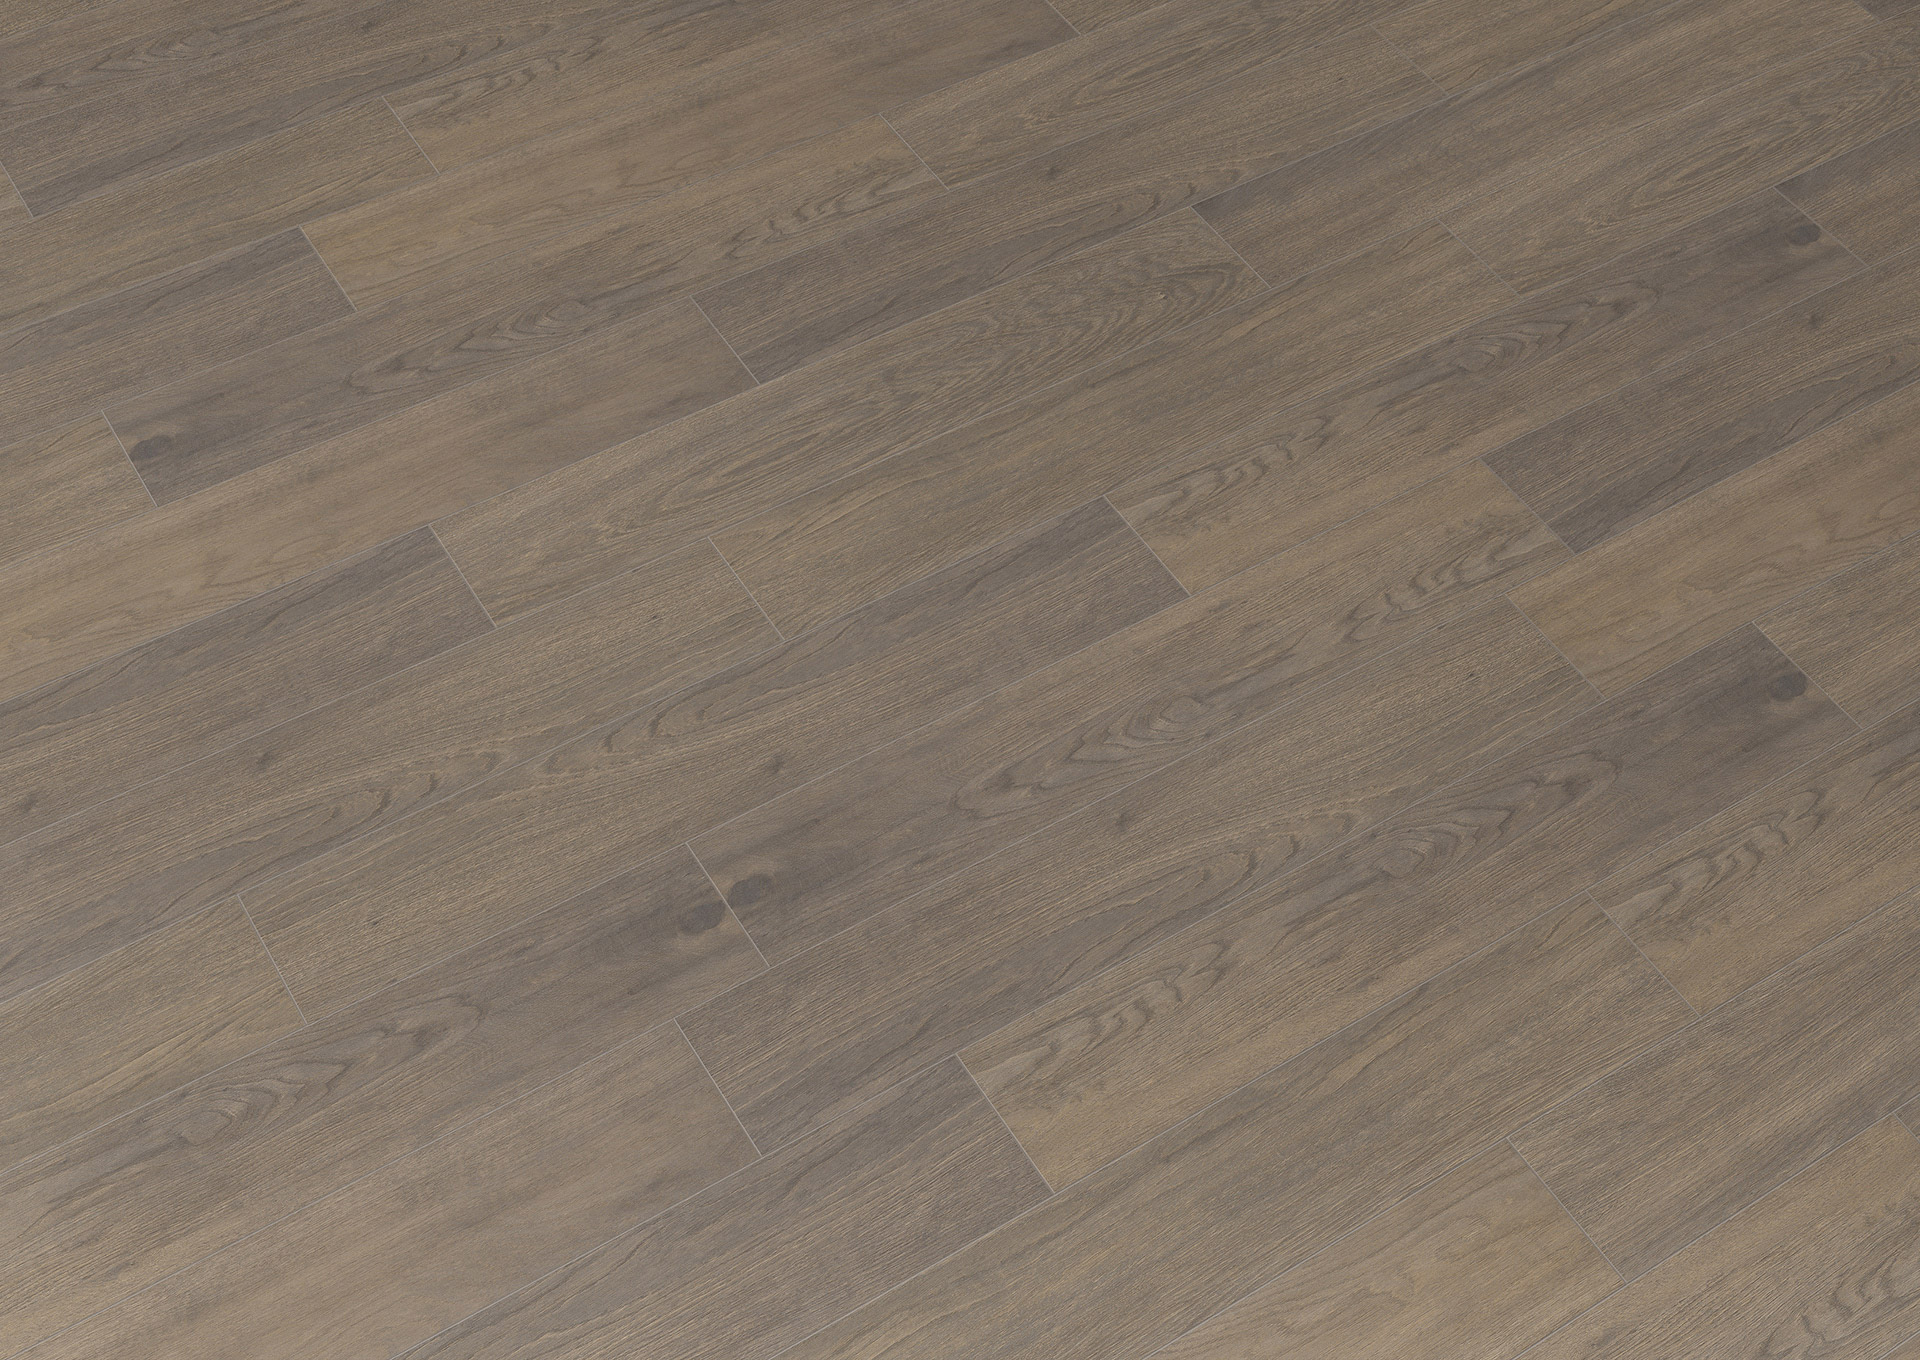 06 Summerville brown 20x120 flooring, 6mm